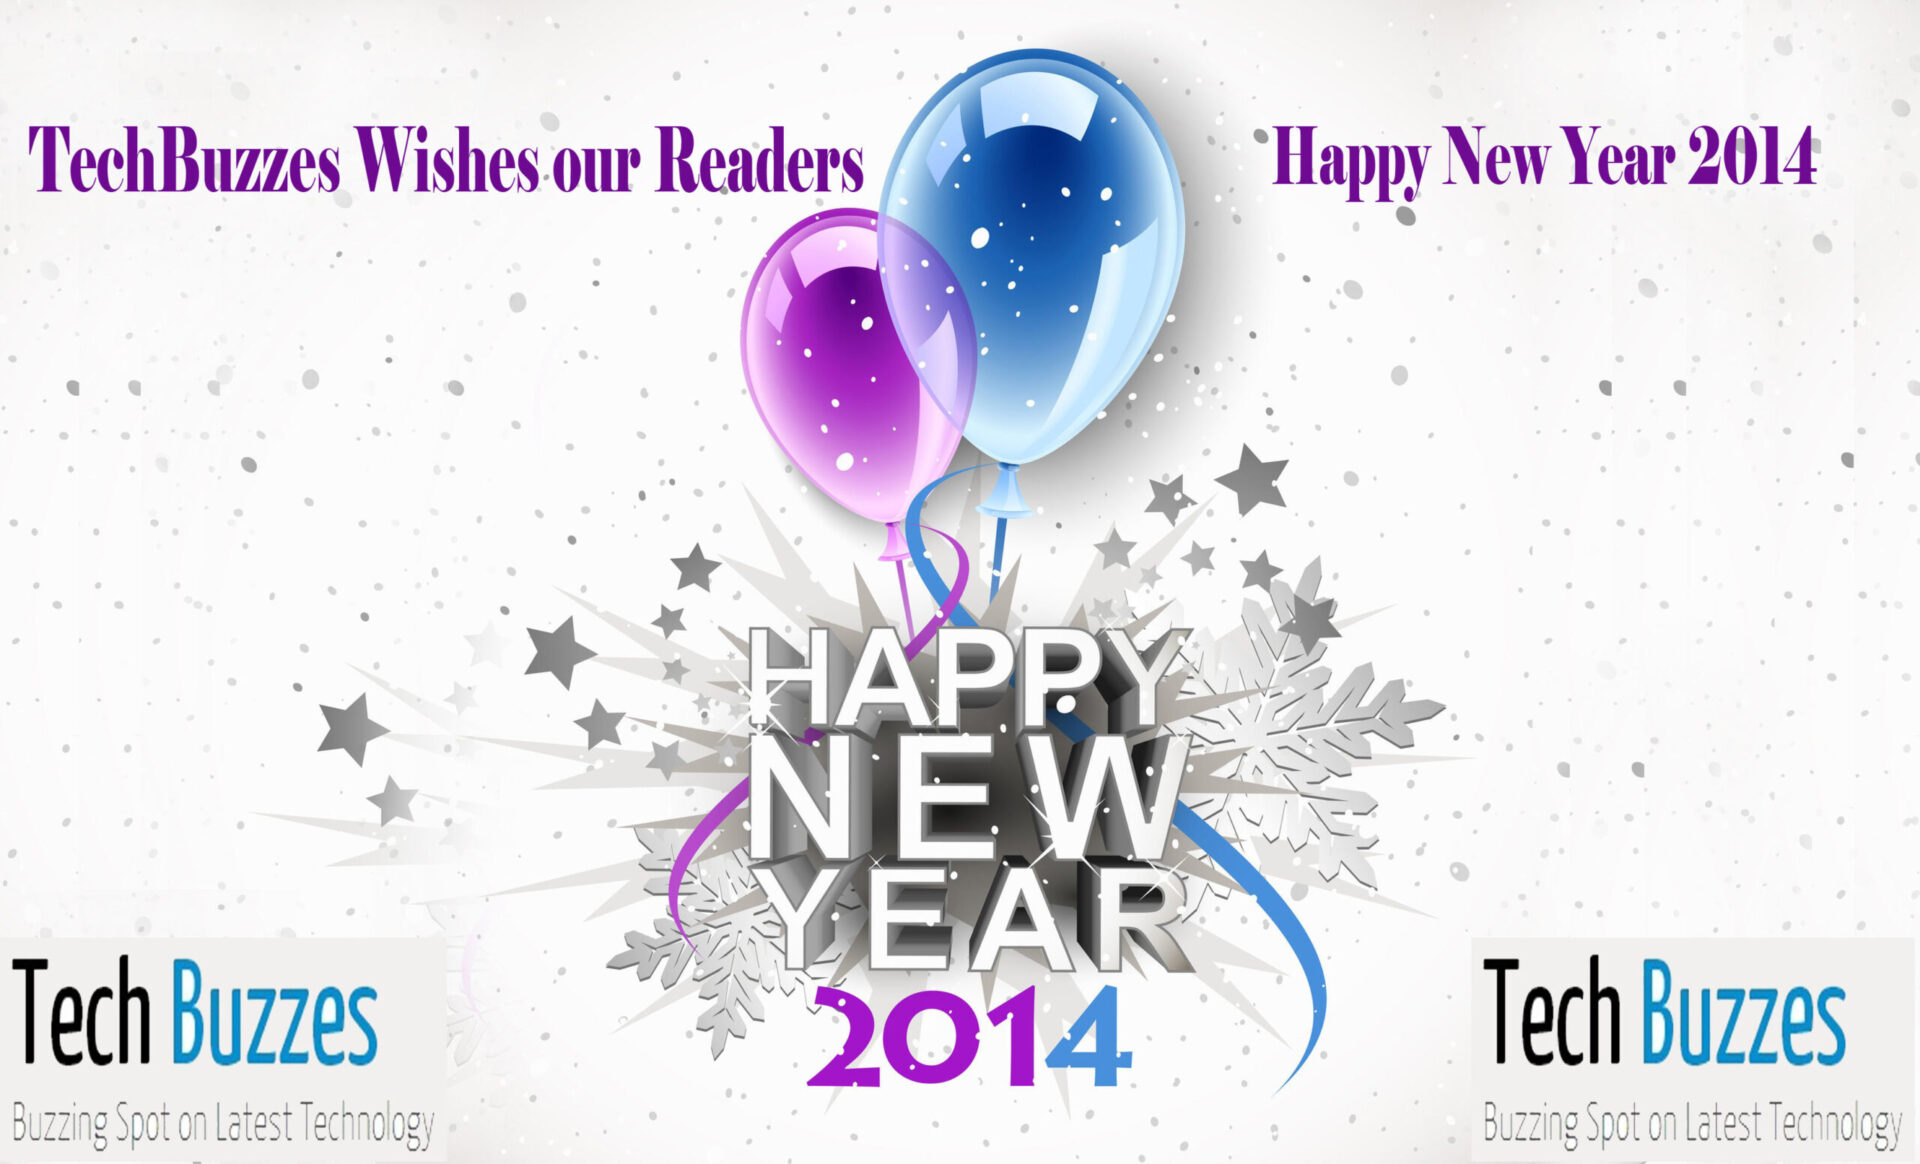 Happy New Year 2014 Wishes, Happy New Year 2014, Happy New Year 2014 Wishes & Greetings, Happy New Year 2014 greetings,